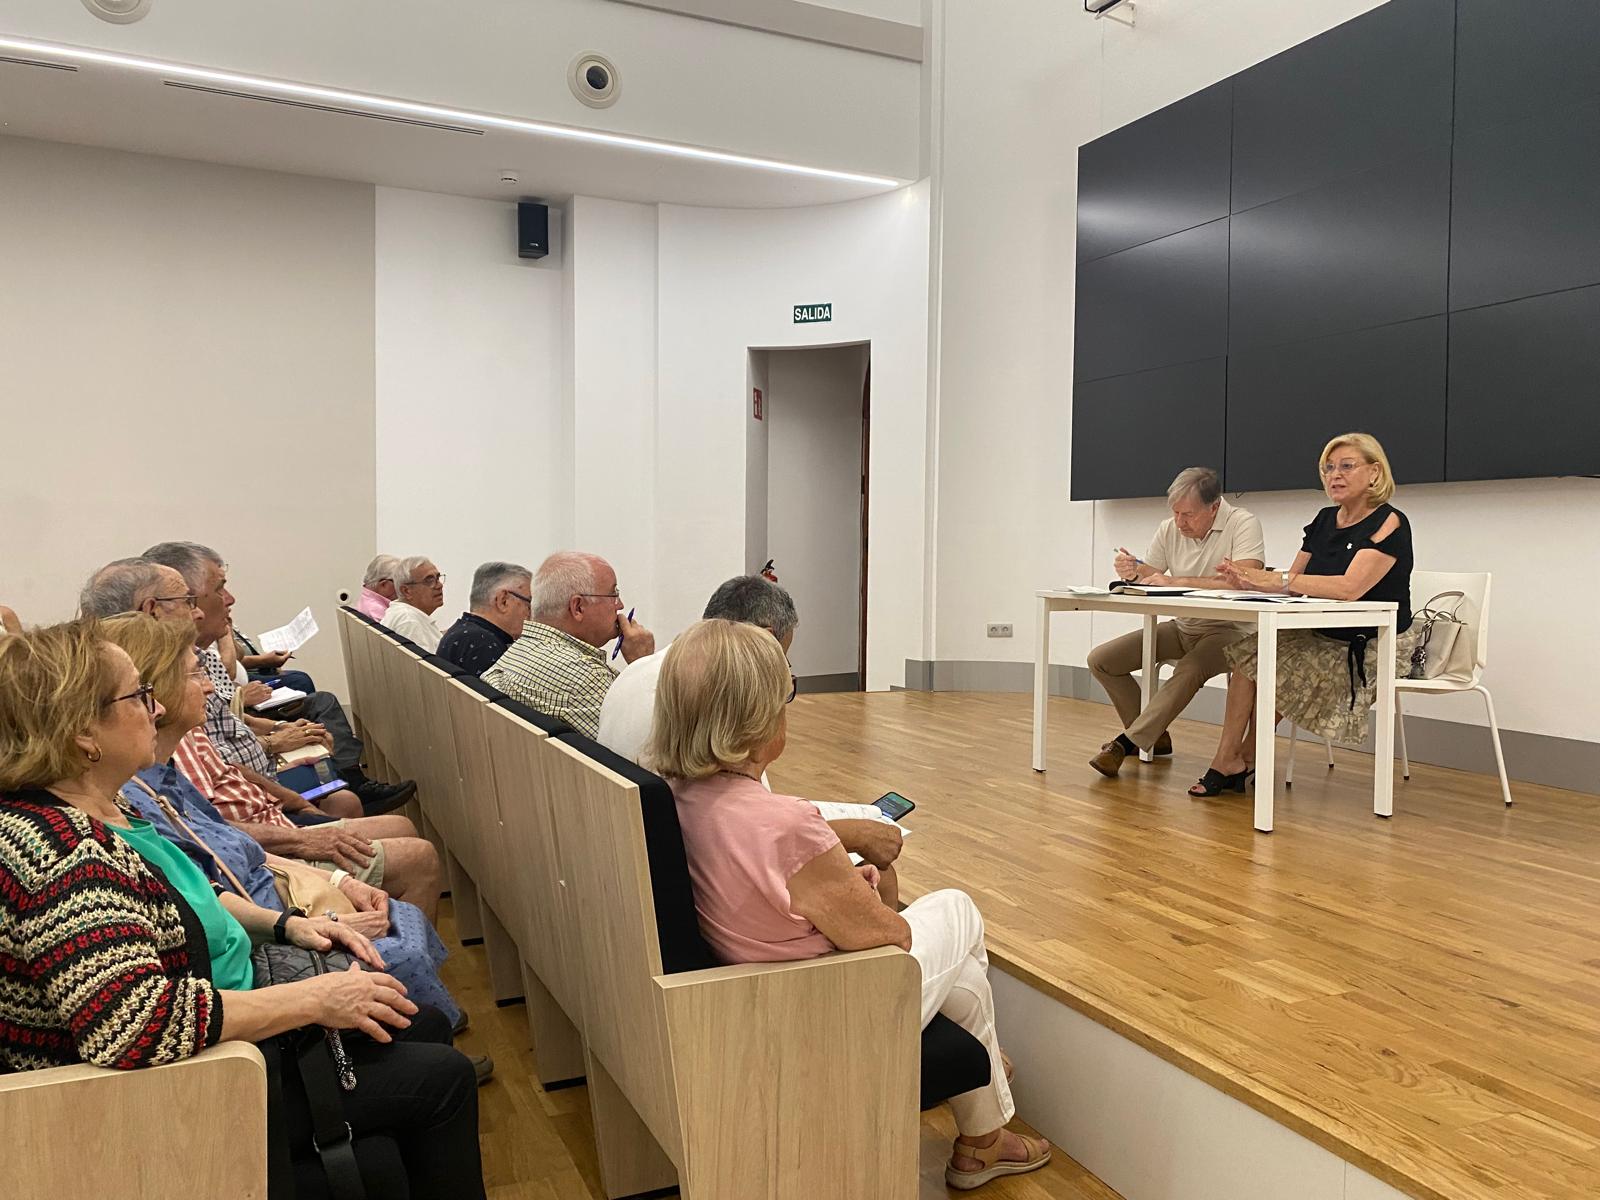 Avanza a buen ritmo el primer Plan Municipal de Mayores que tendrá la ciudad con el trabajo de investigación para detectar las necesidades reales de los castellonenses